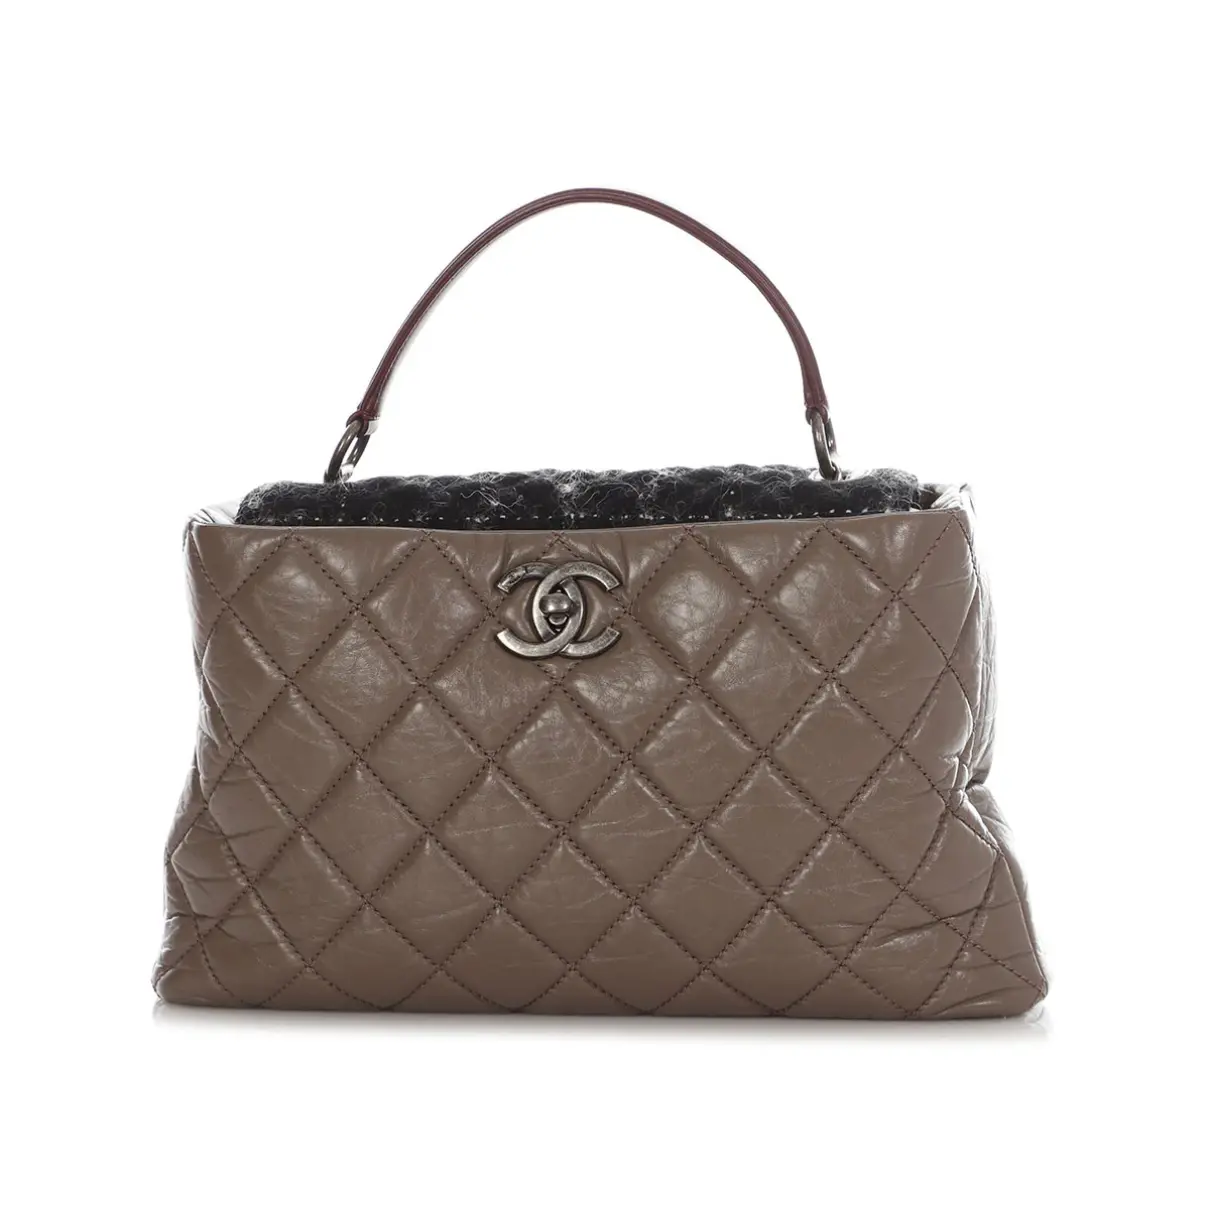 Buy Chanel Portobello leather satchel online